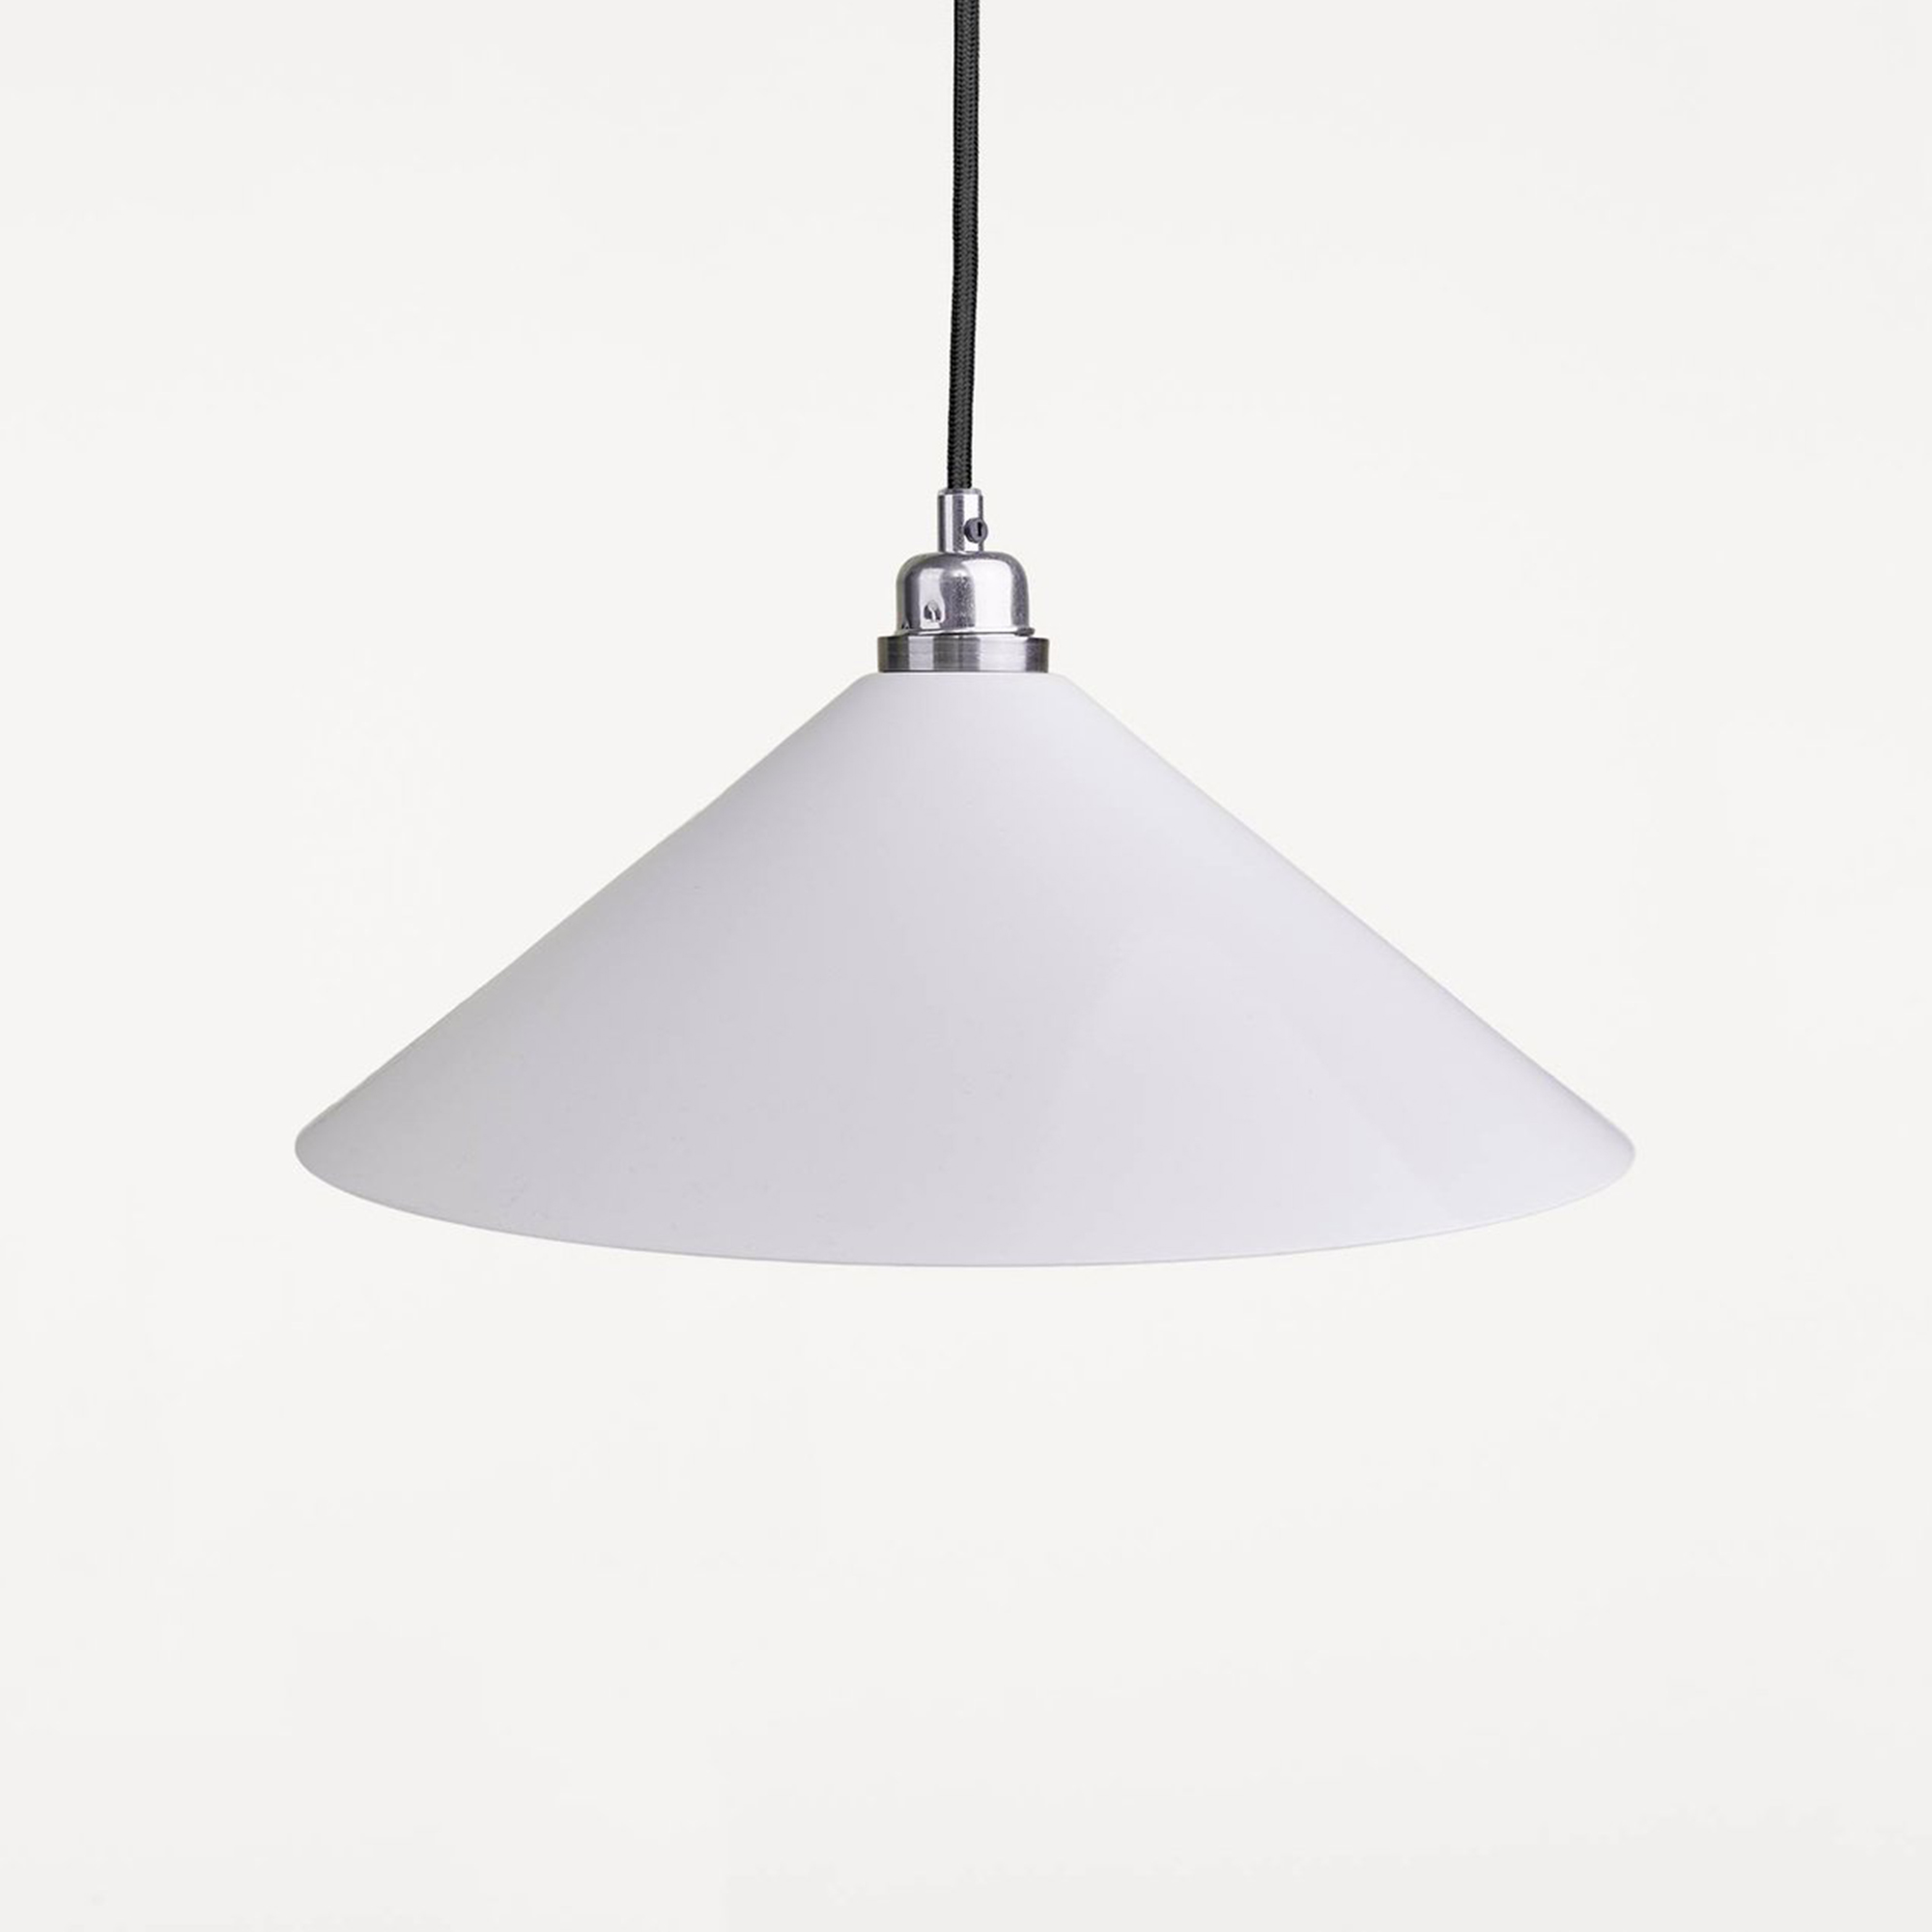 Modulo Shop: Frama Cone Lamp Shade